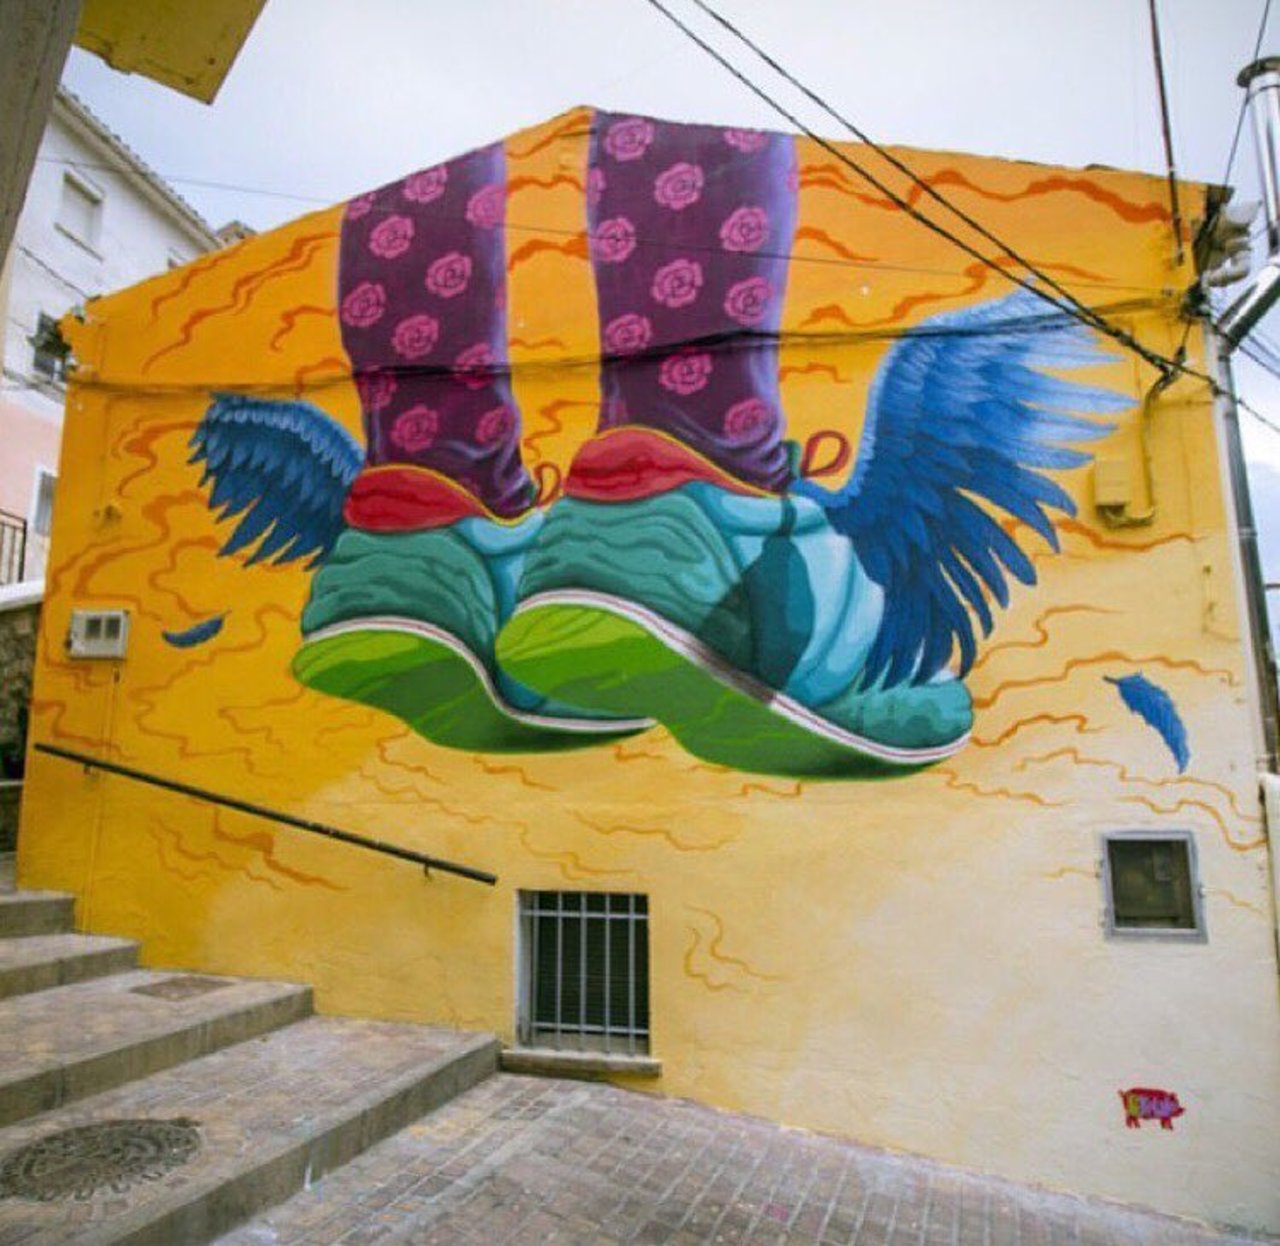 Street Art by Penelope Lape Spain #art #mural #graffiti #streetart https://t.co/bcM5aGphbI